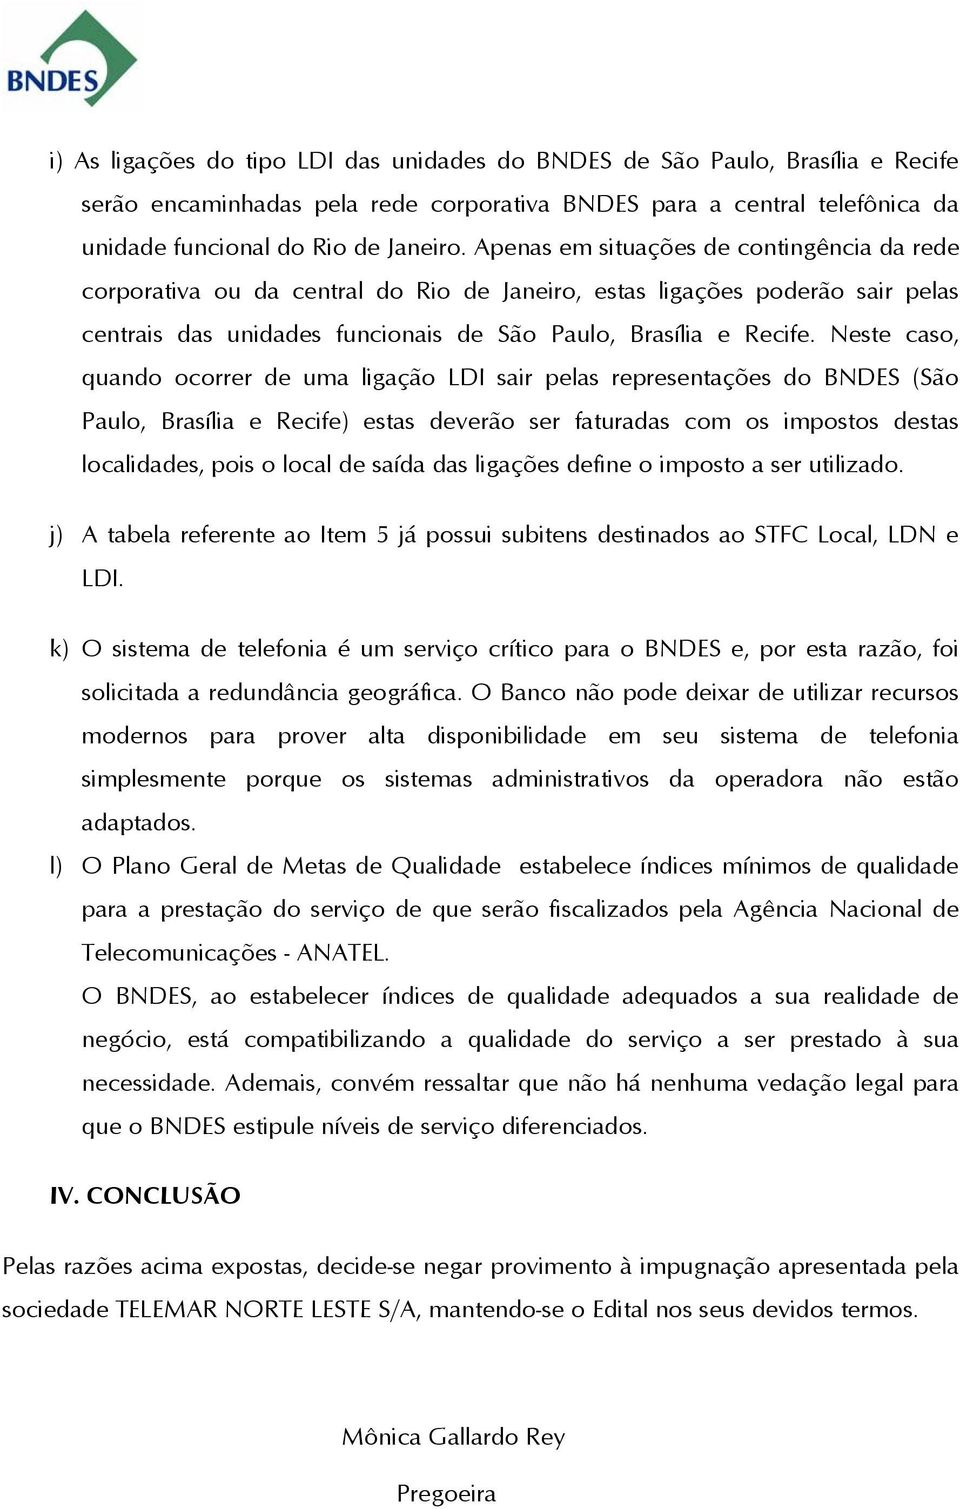 Neste caso, quando ocorrer de uma ligação LDI sair pelas representações do BNDES (São Paulo, Brasília e Recife) estas deverão ser faturadas com os impostos destas localidades, pois o local de saída